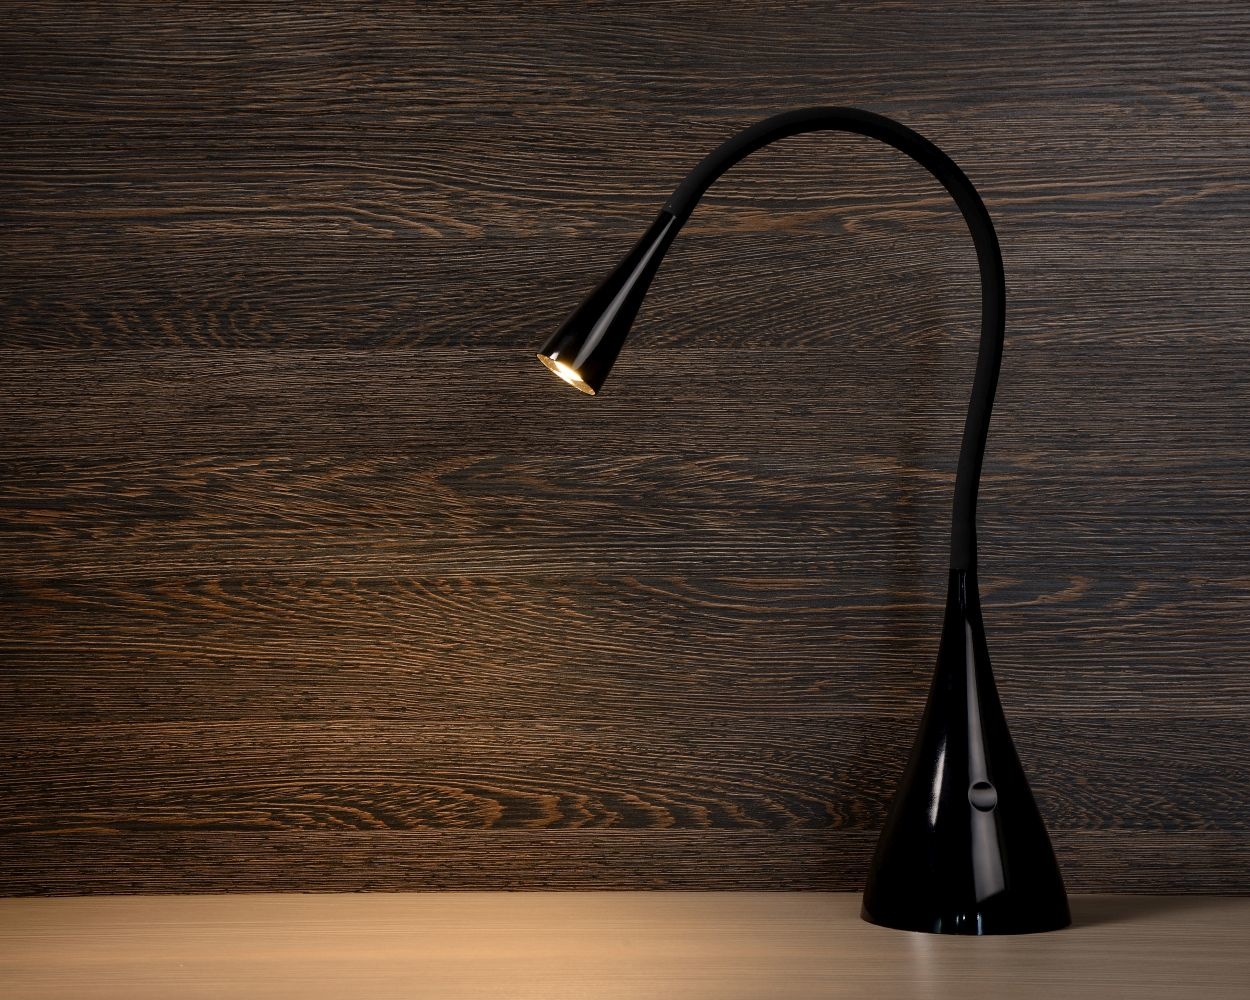 Lampe de bureau Trooper LED 4W 3000K avec intensité réglable et structure  flexible - Noir